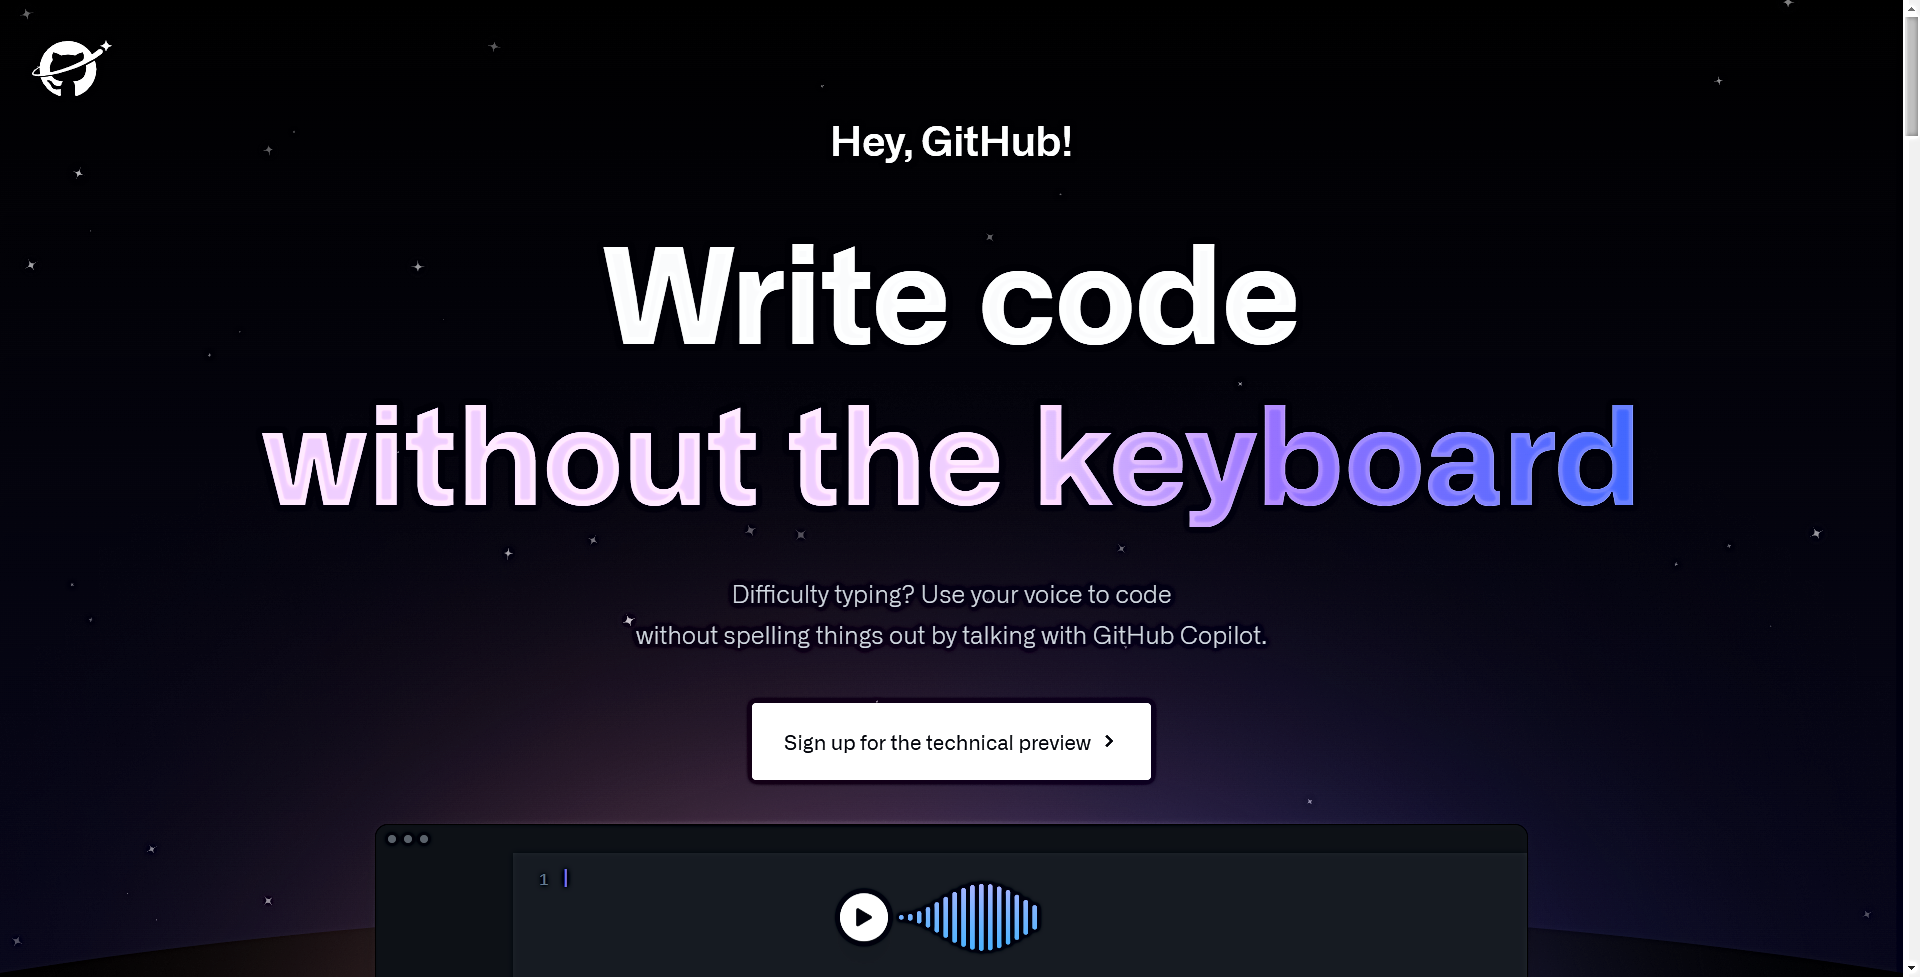 Hey, GitHub! featured